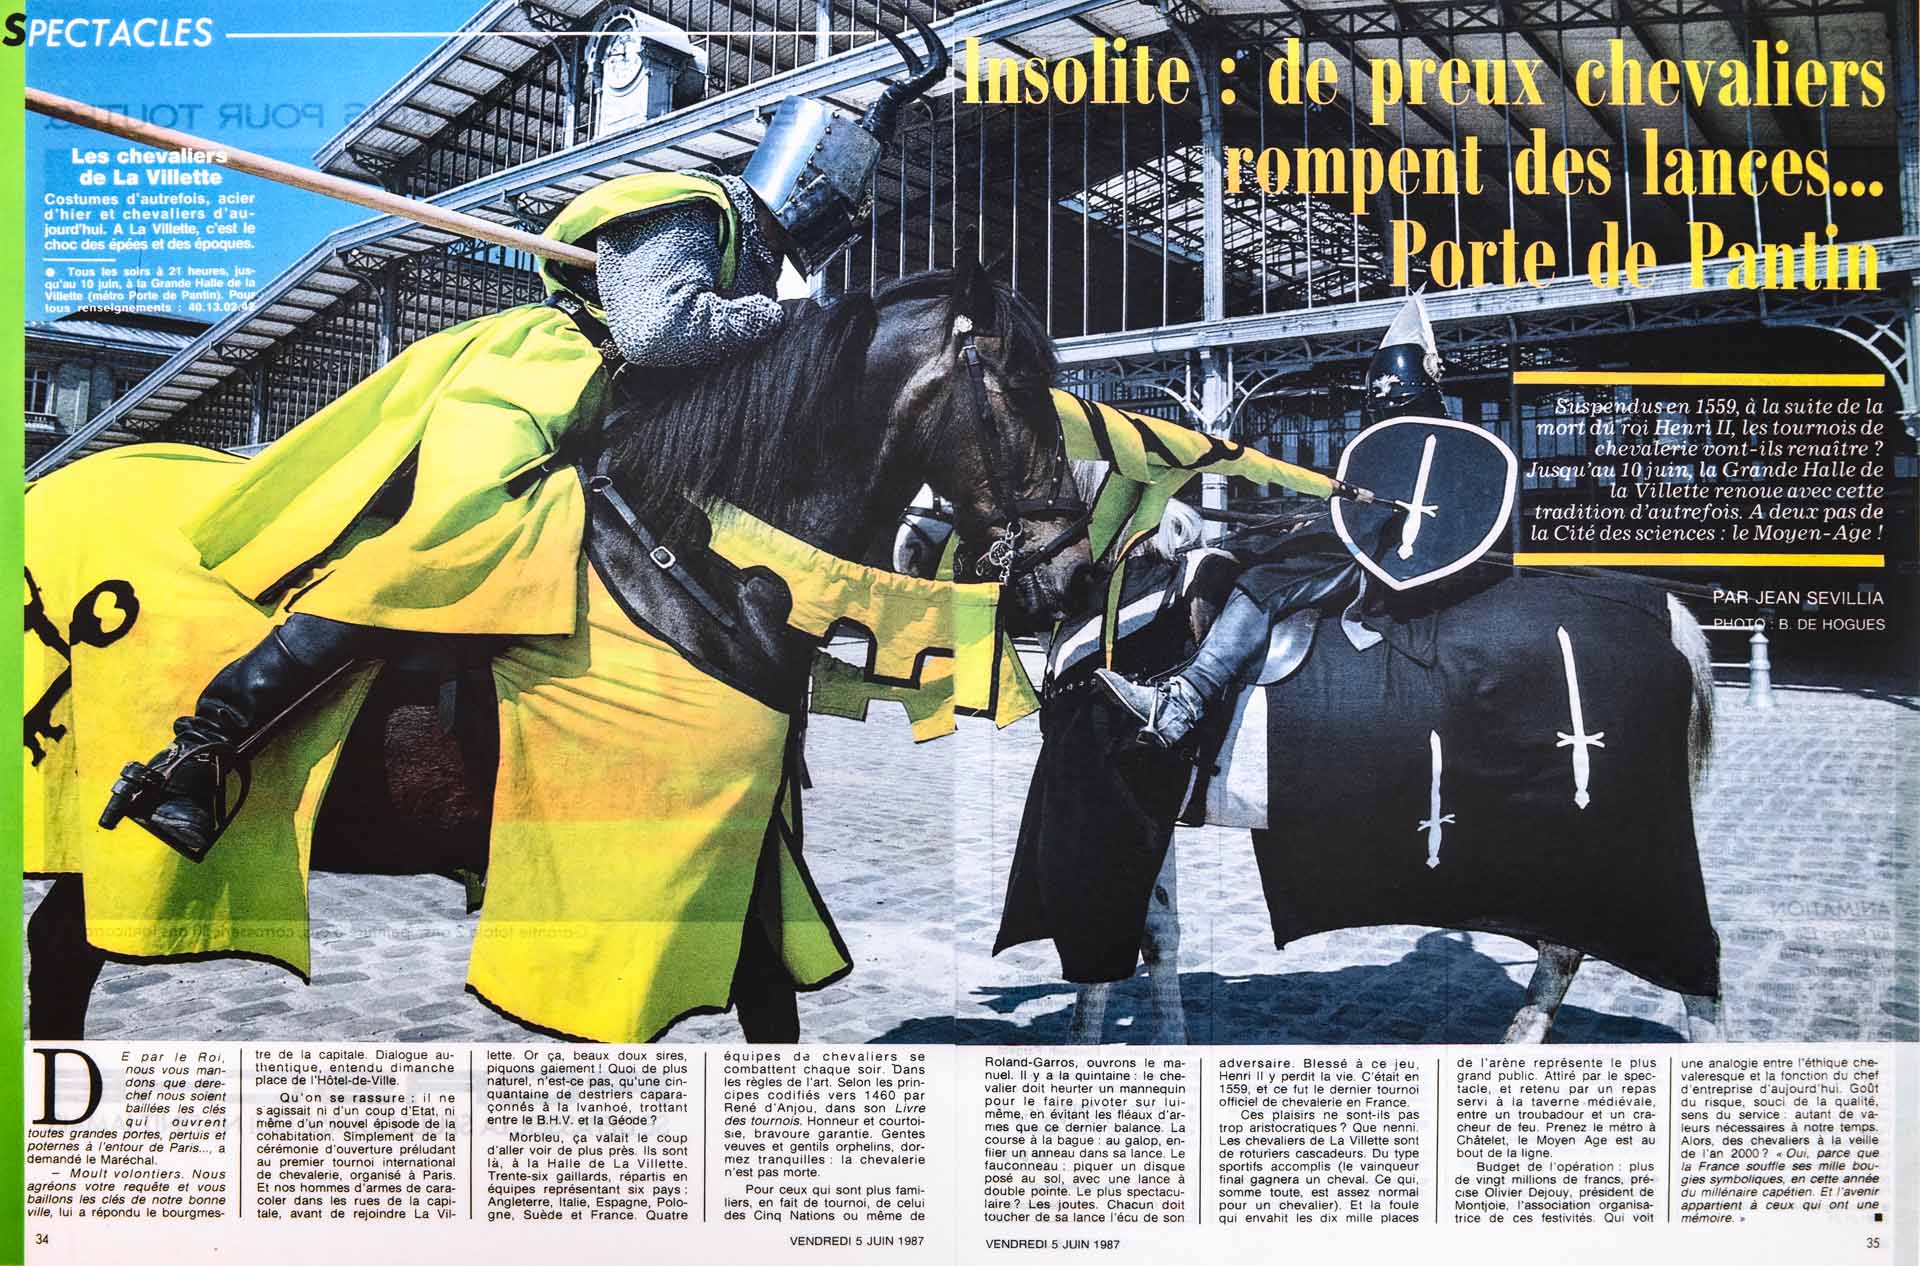 Publication Double Page Le Figaro Magazine 5 Juin 1987. Spectacle Le Millénaire des Capétiens aux Halles de La Villette à Paris.